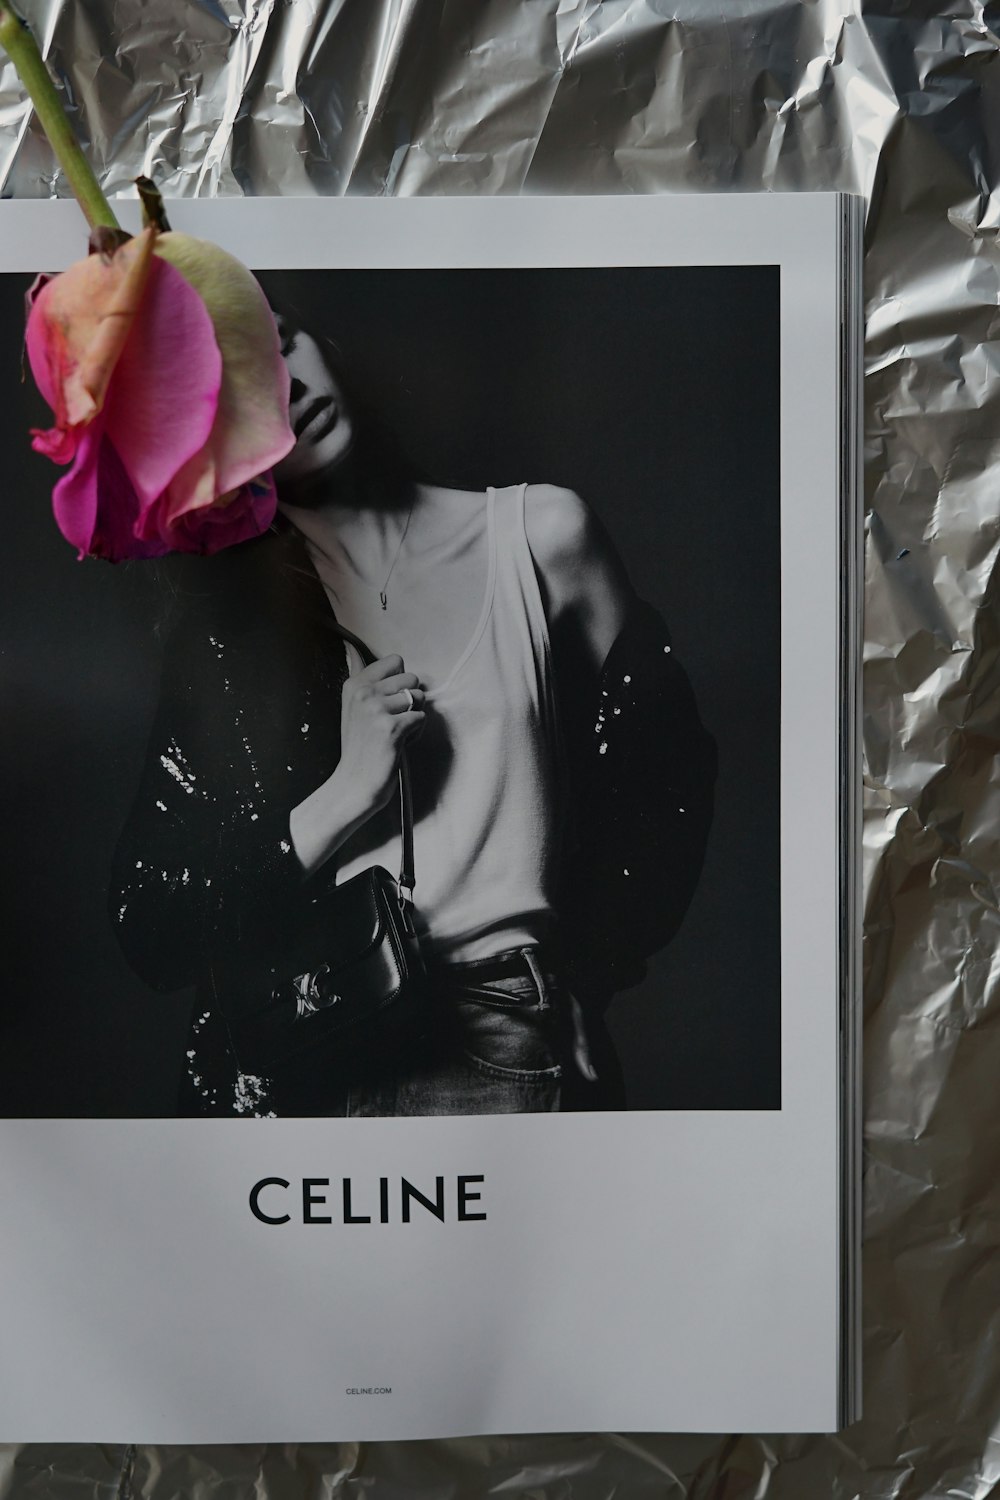 Celine album